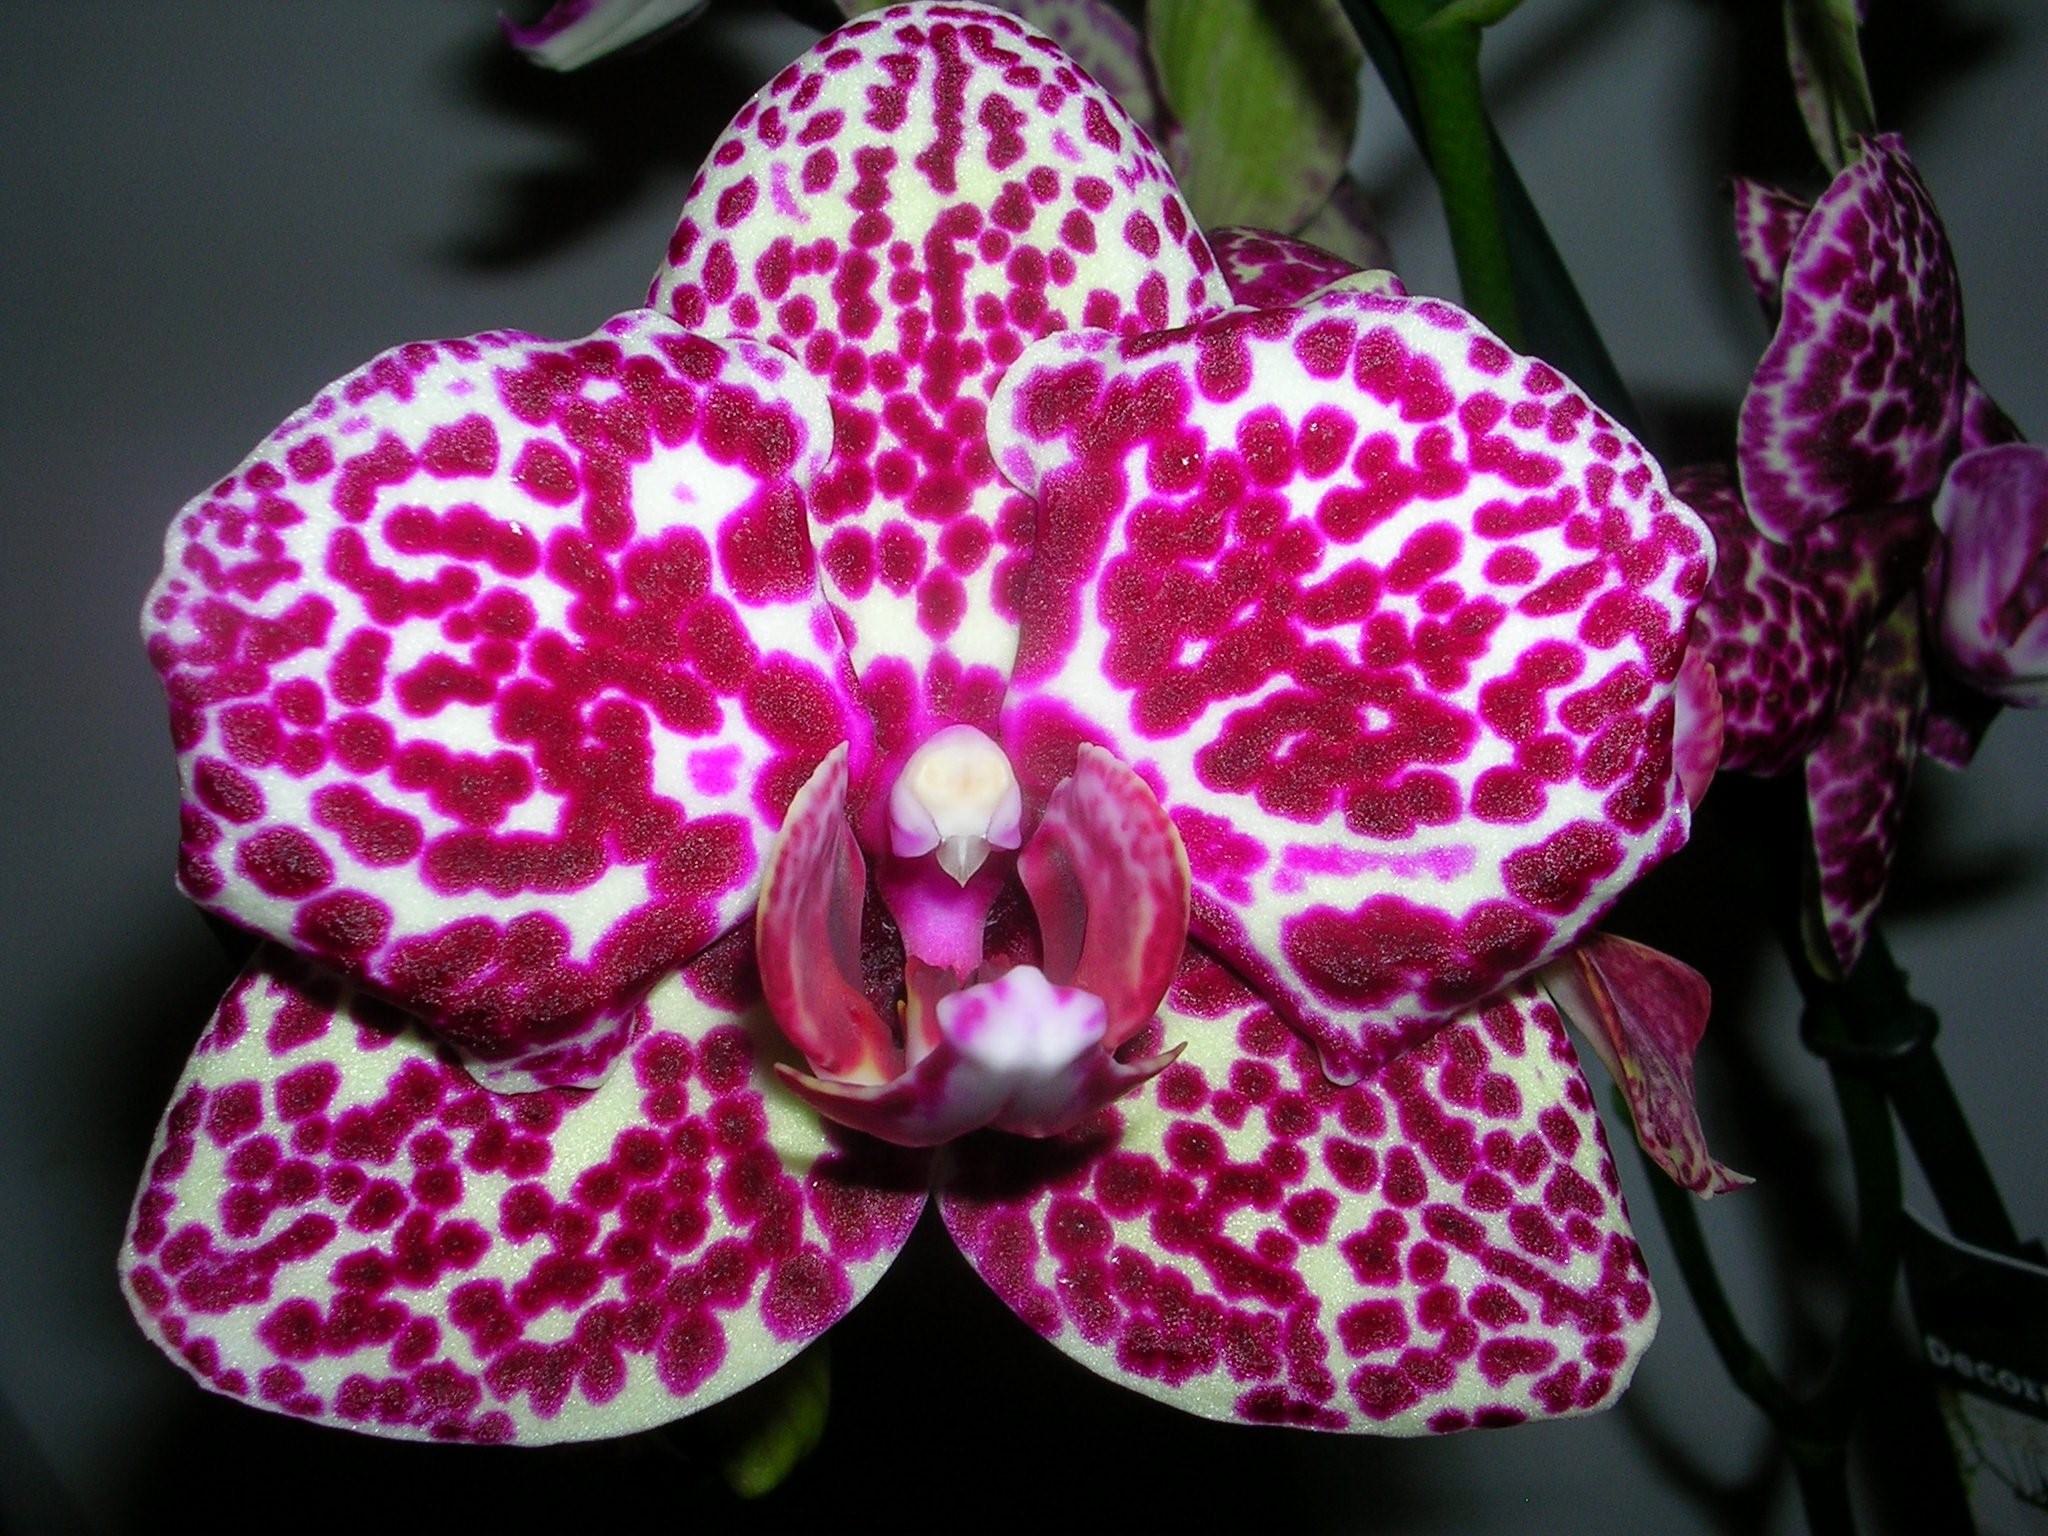 Дикий кот орхидея описание сорта фото